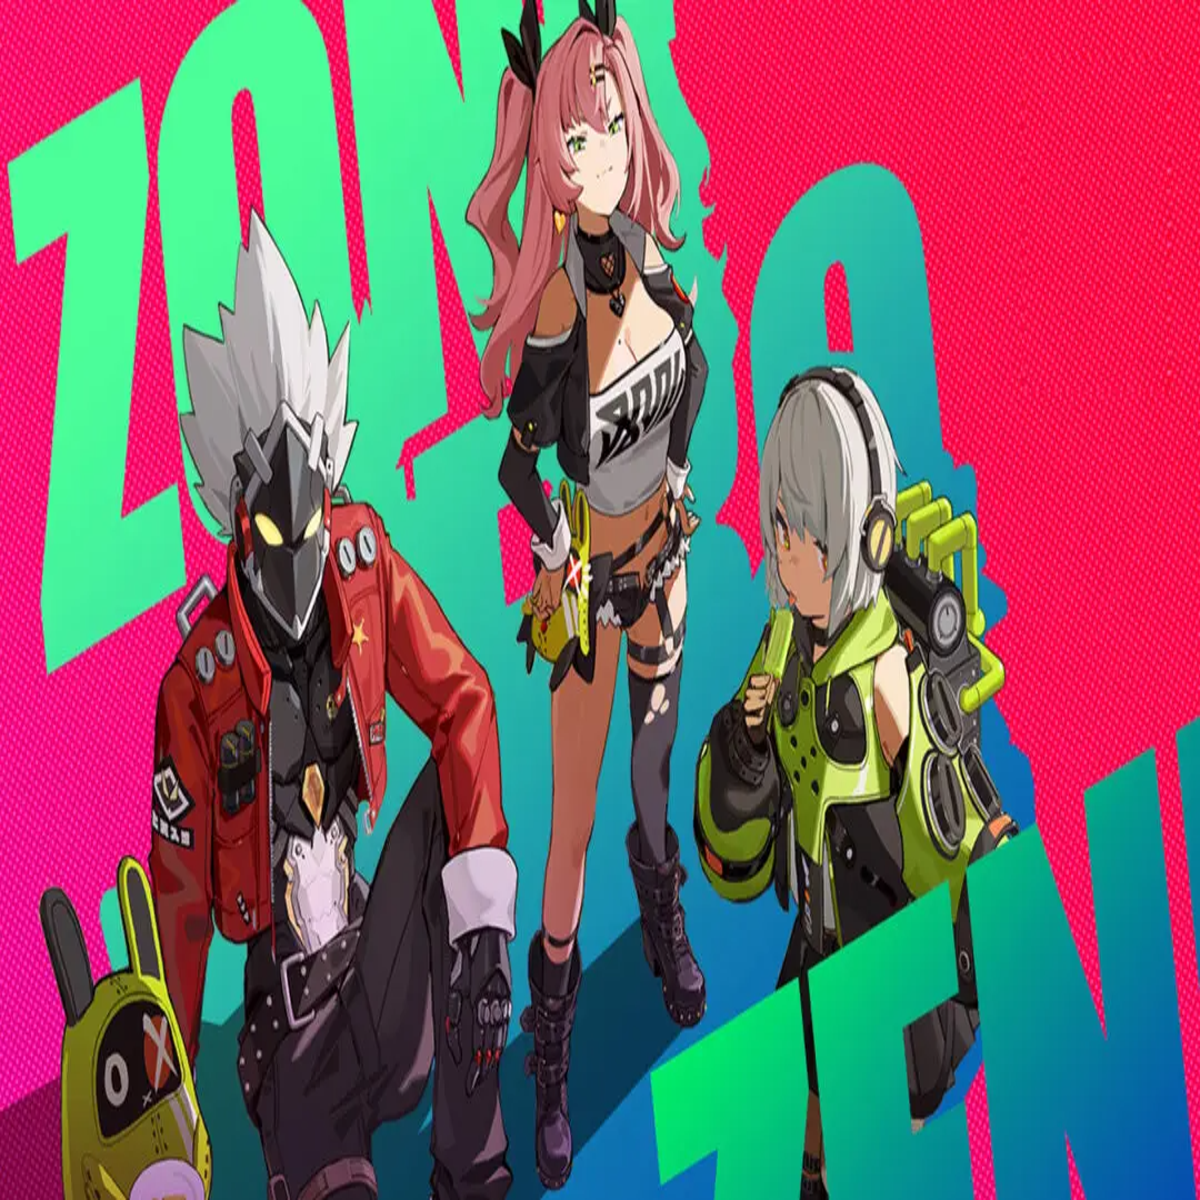 Los requisitos que debes tener en cuenta para disfrutar de la Beta de Zenless  Zone Zero en PC e iOS